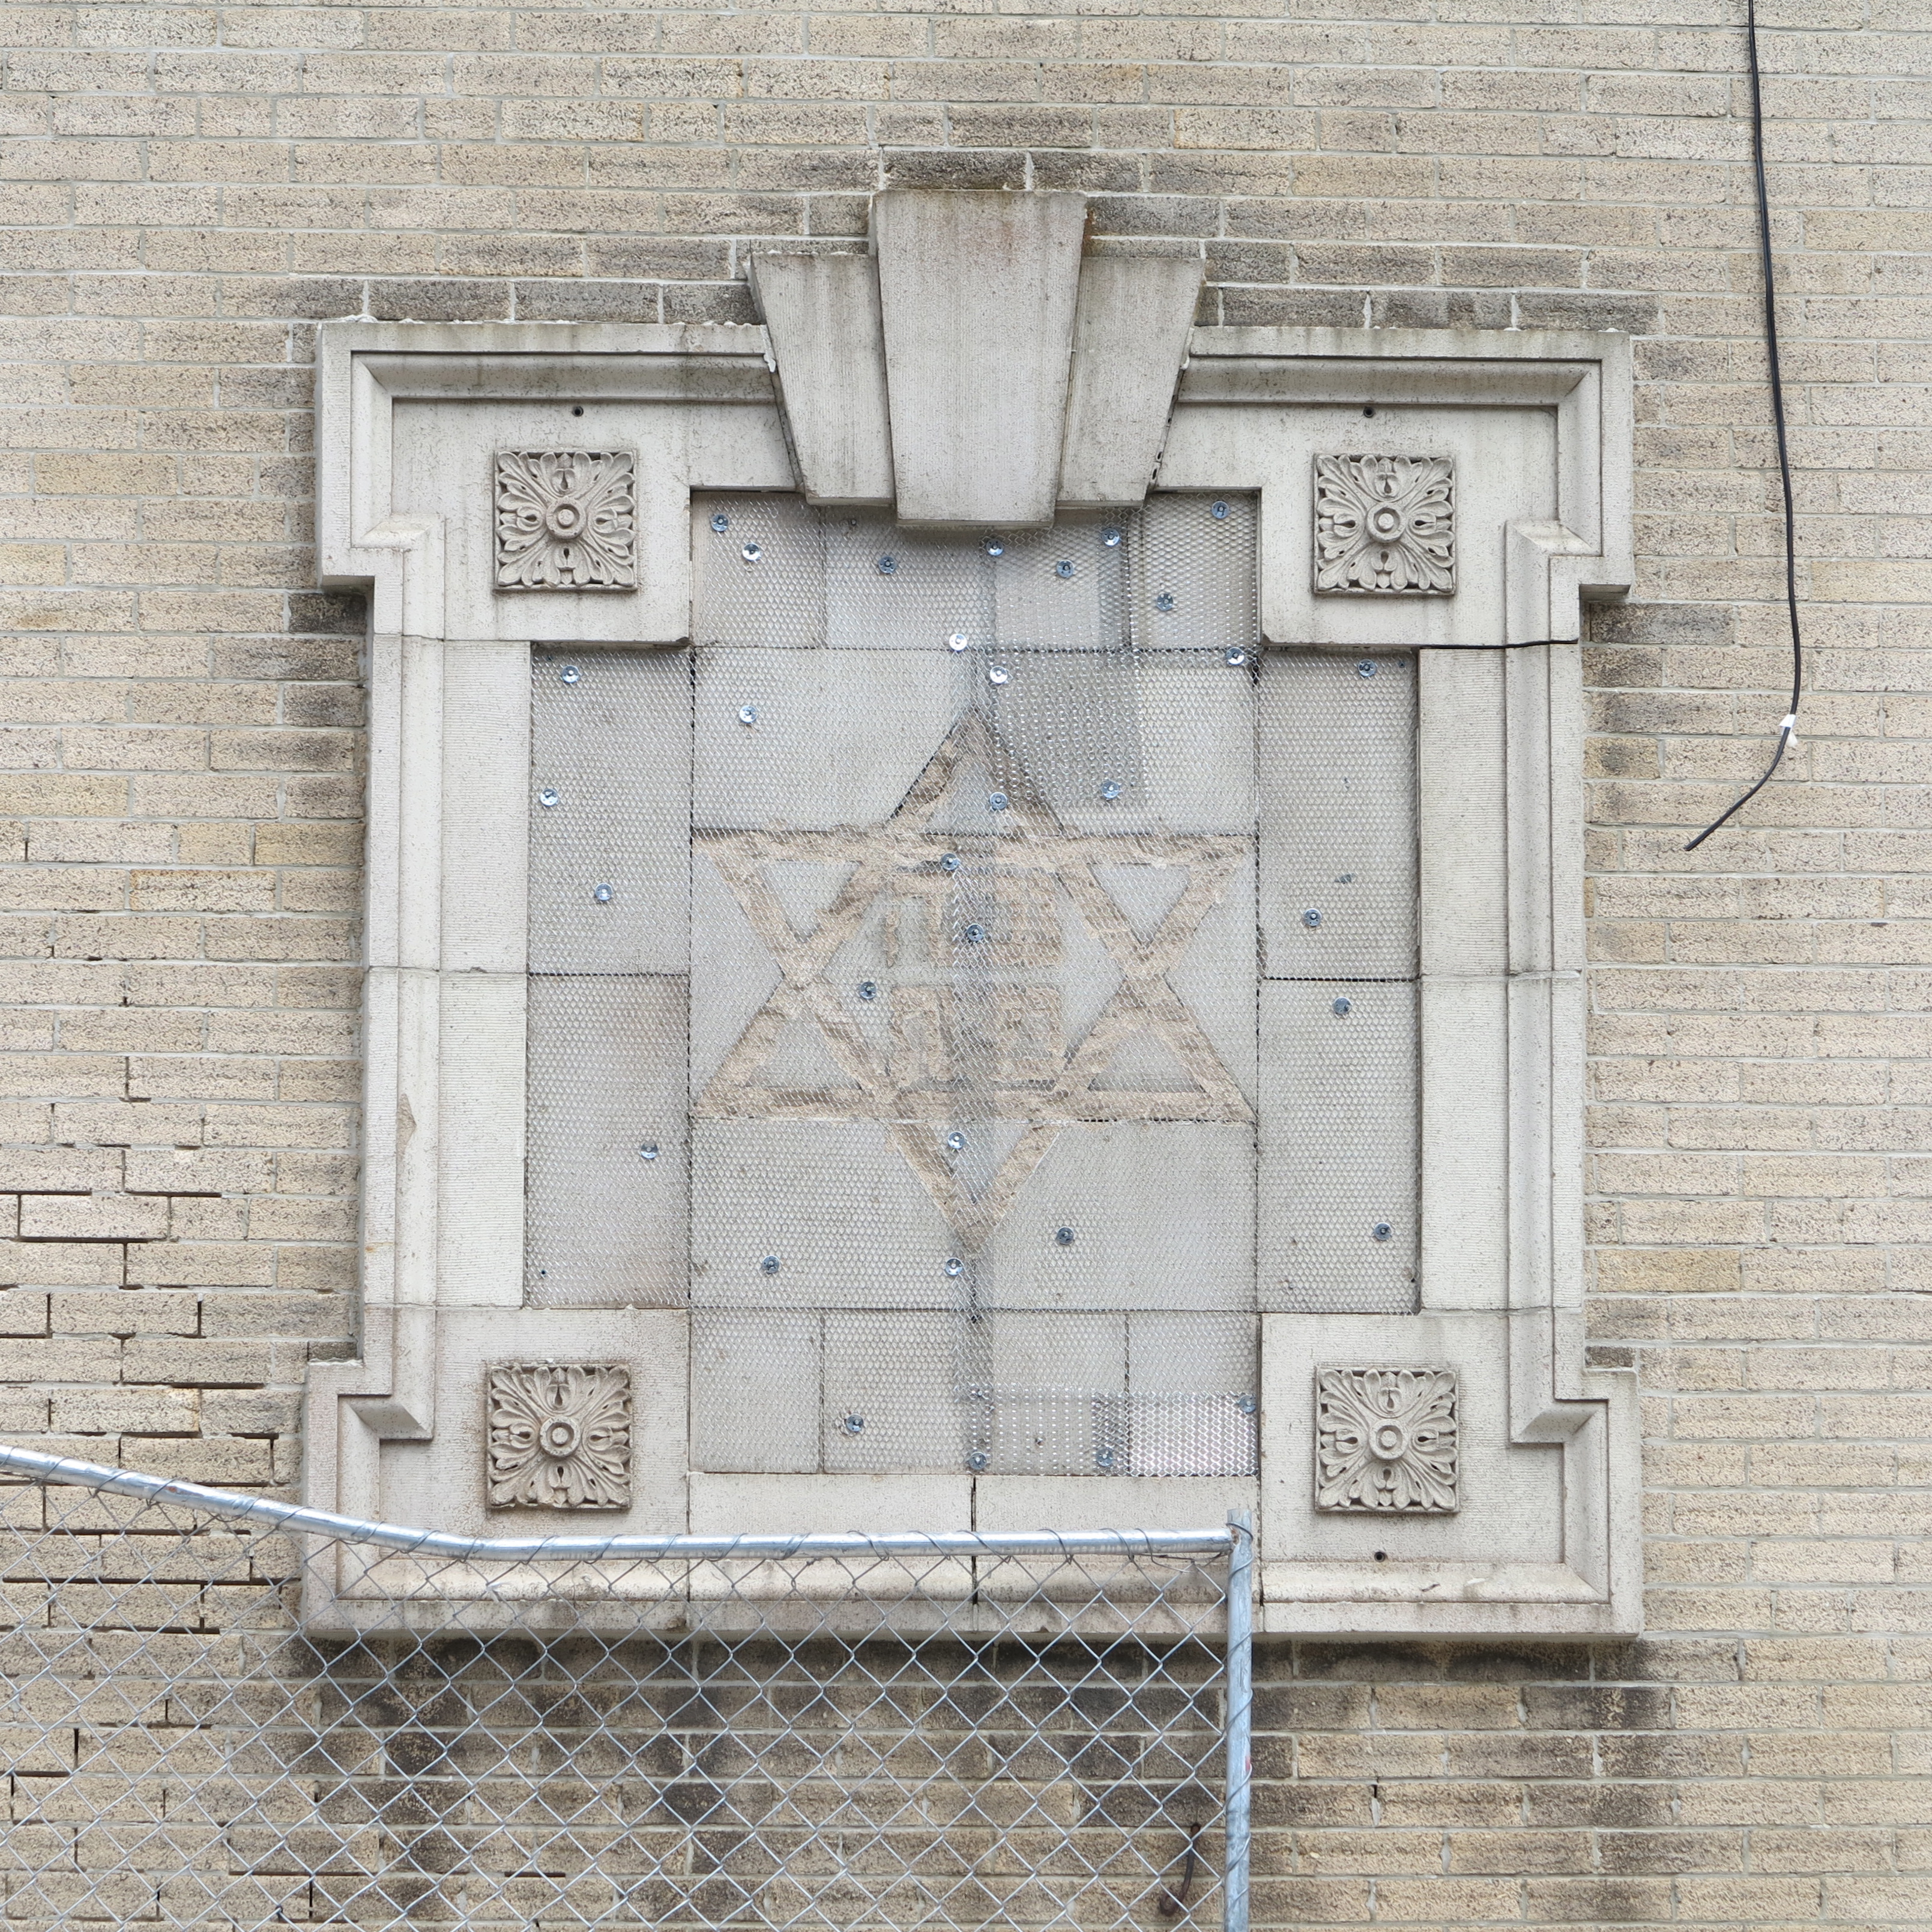 Star of David, shaved off of the former B'nai Reuben Synagogue, June 2014